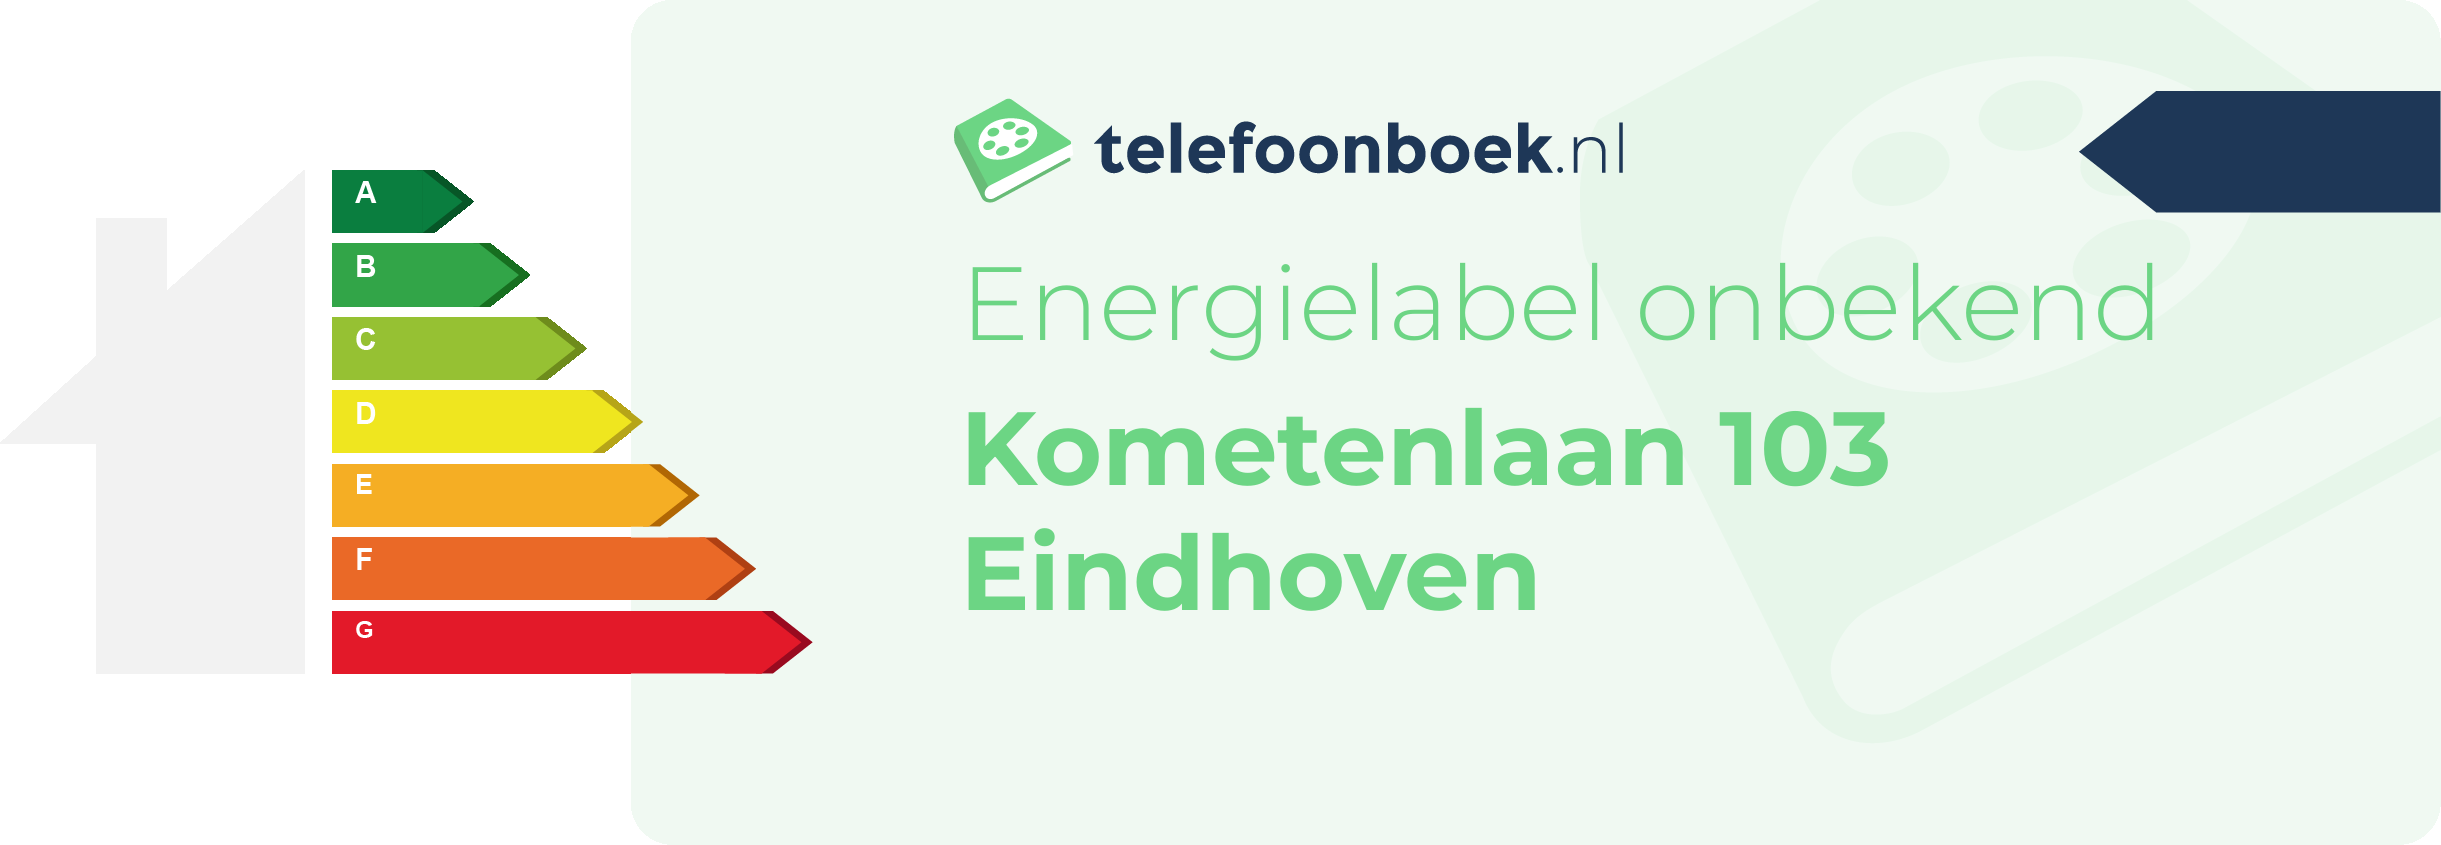 Energielabel Kometenlaan 103 Eindhoven